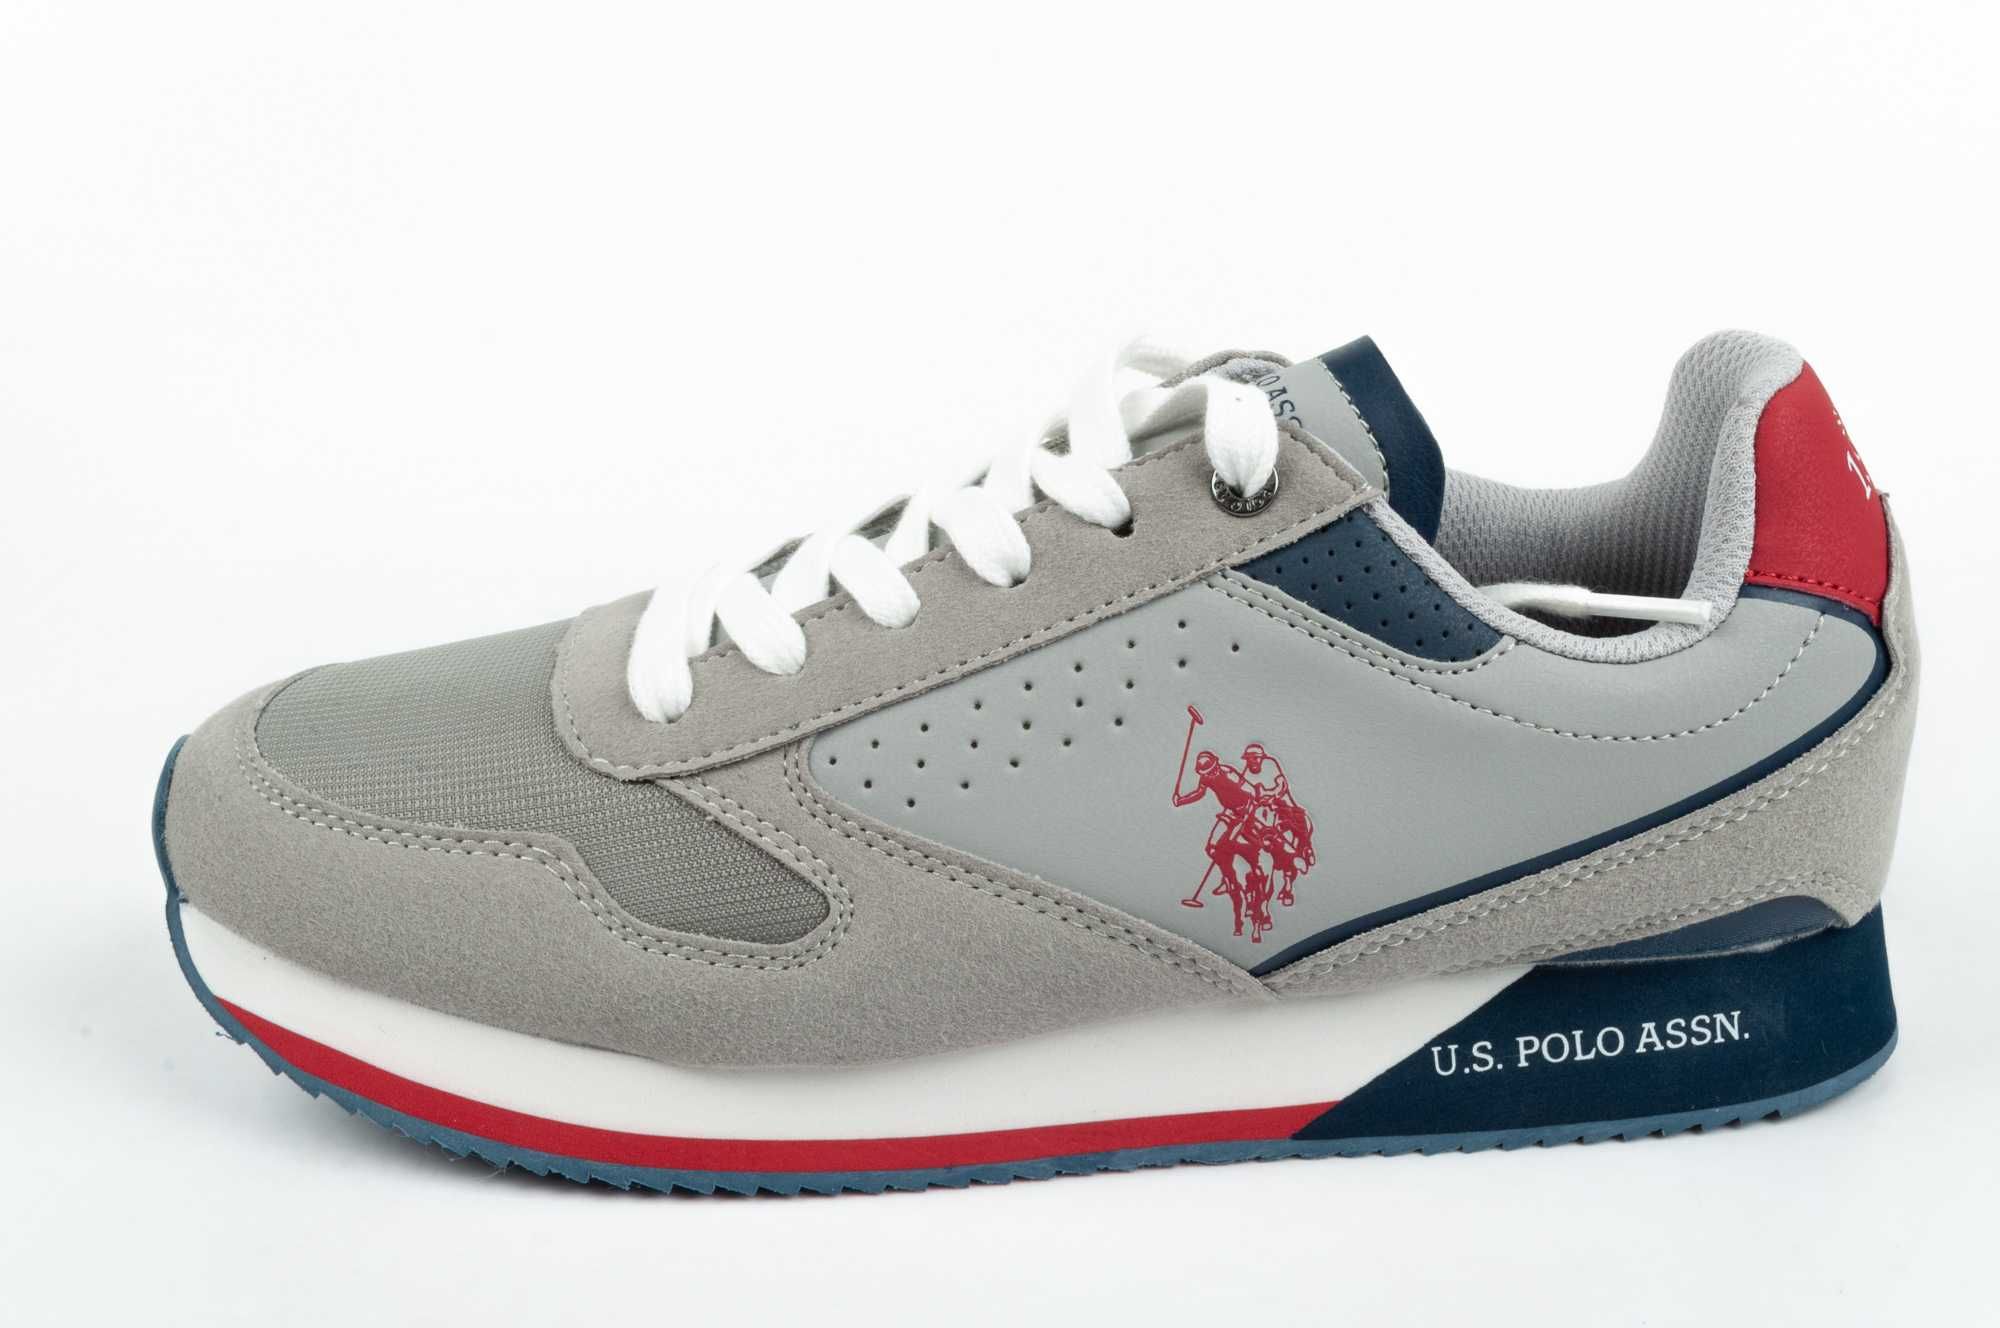 Buty męskie sportowe sneakersy U.S. Polo ASSN. różne rozmiary